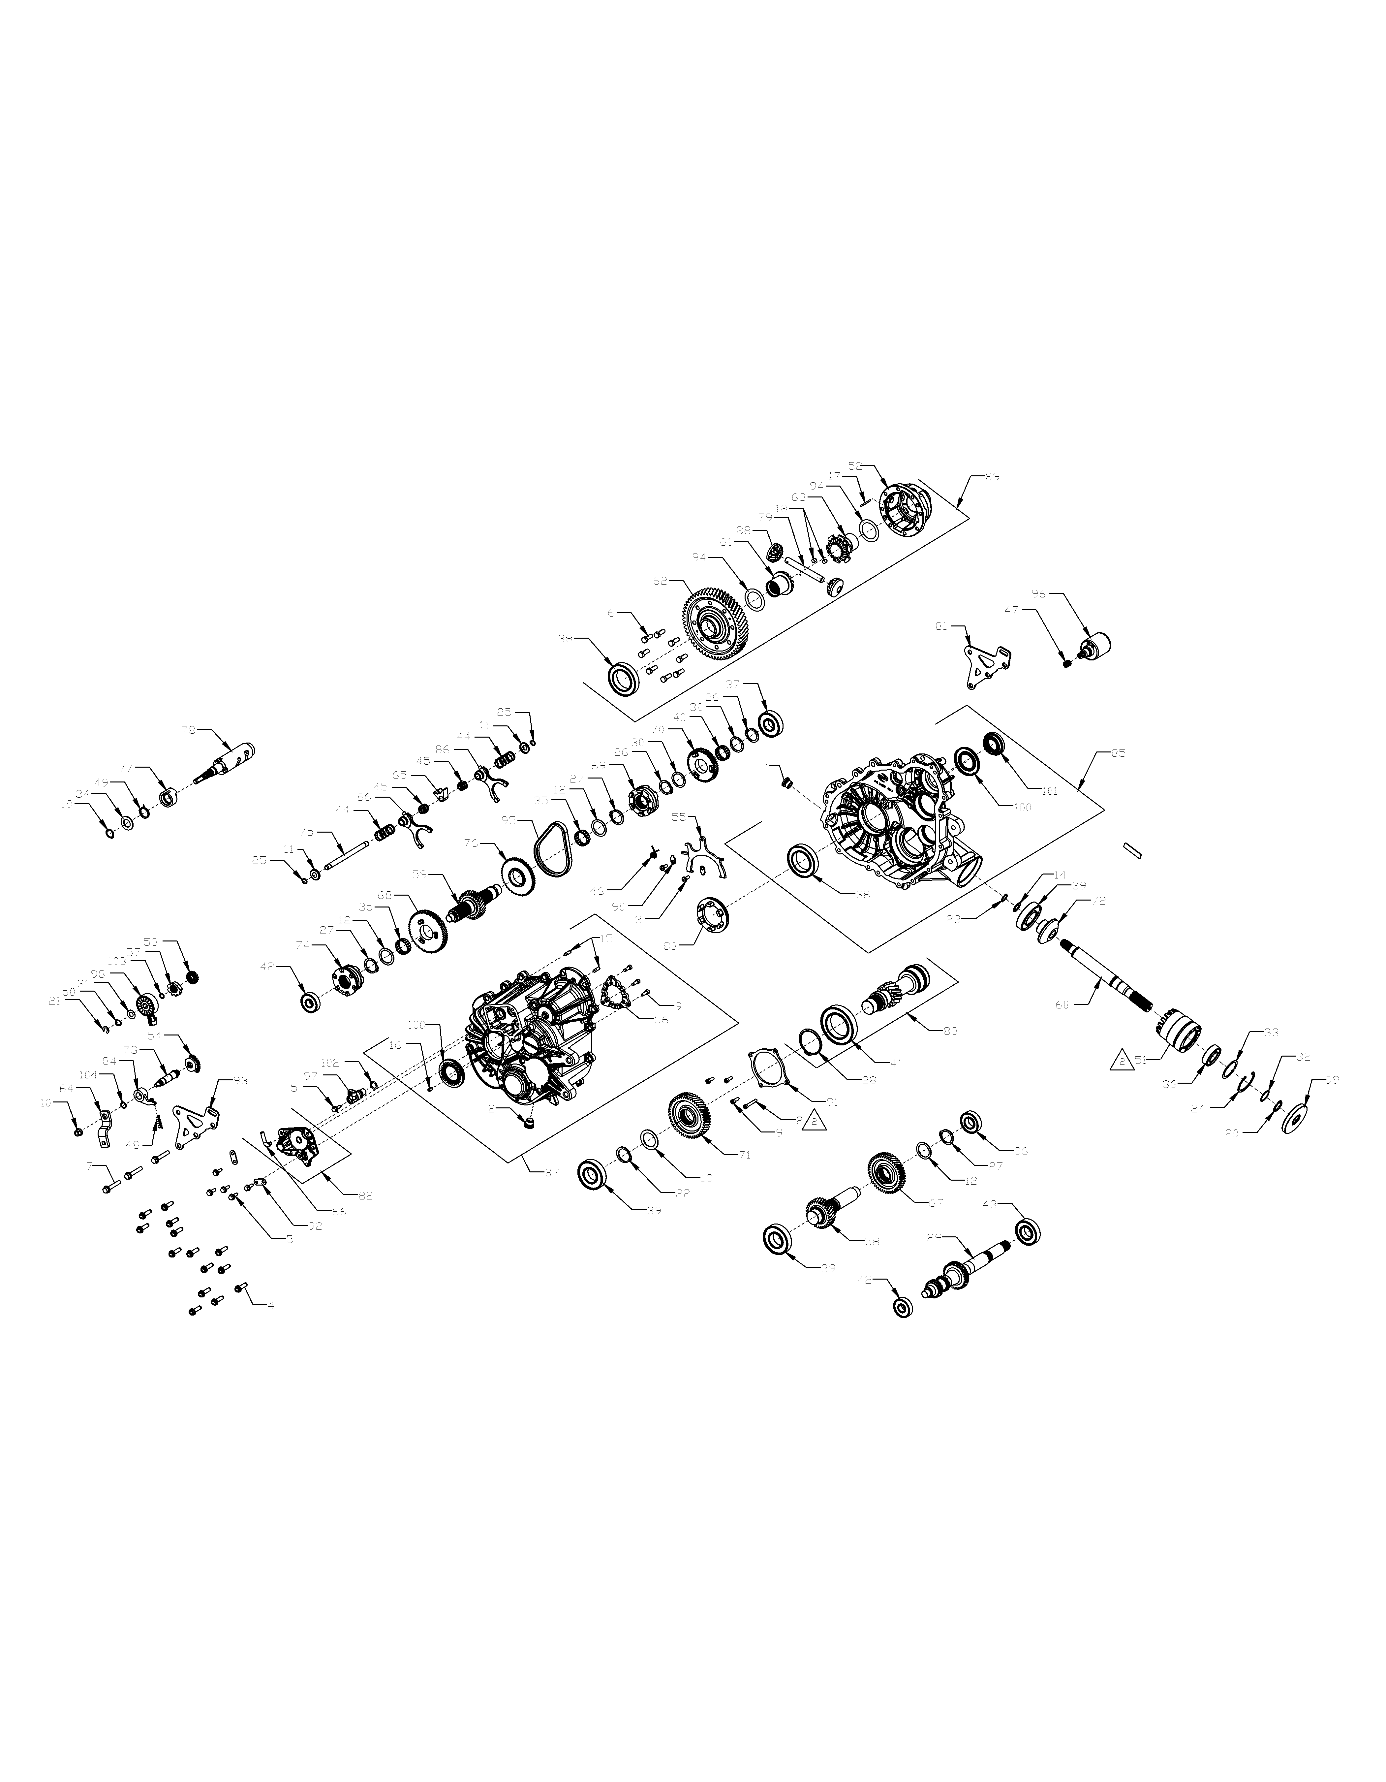 Foto diagrama Polaris que contem a peça 3235885